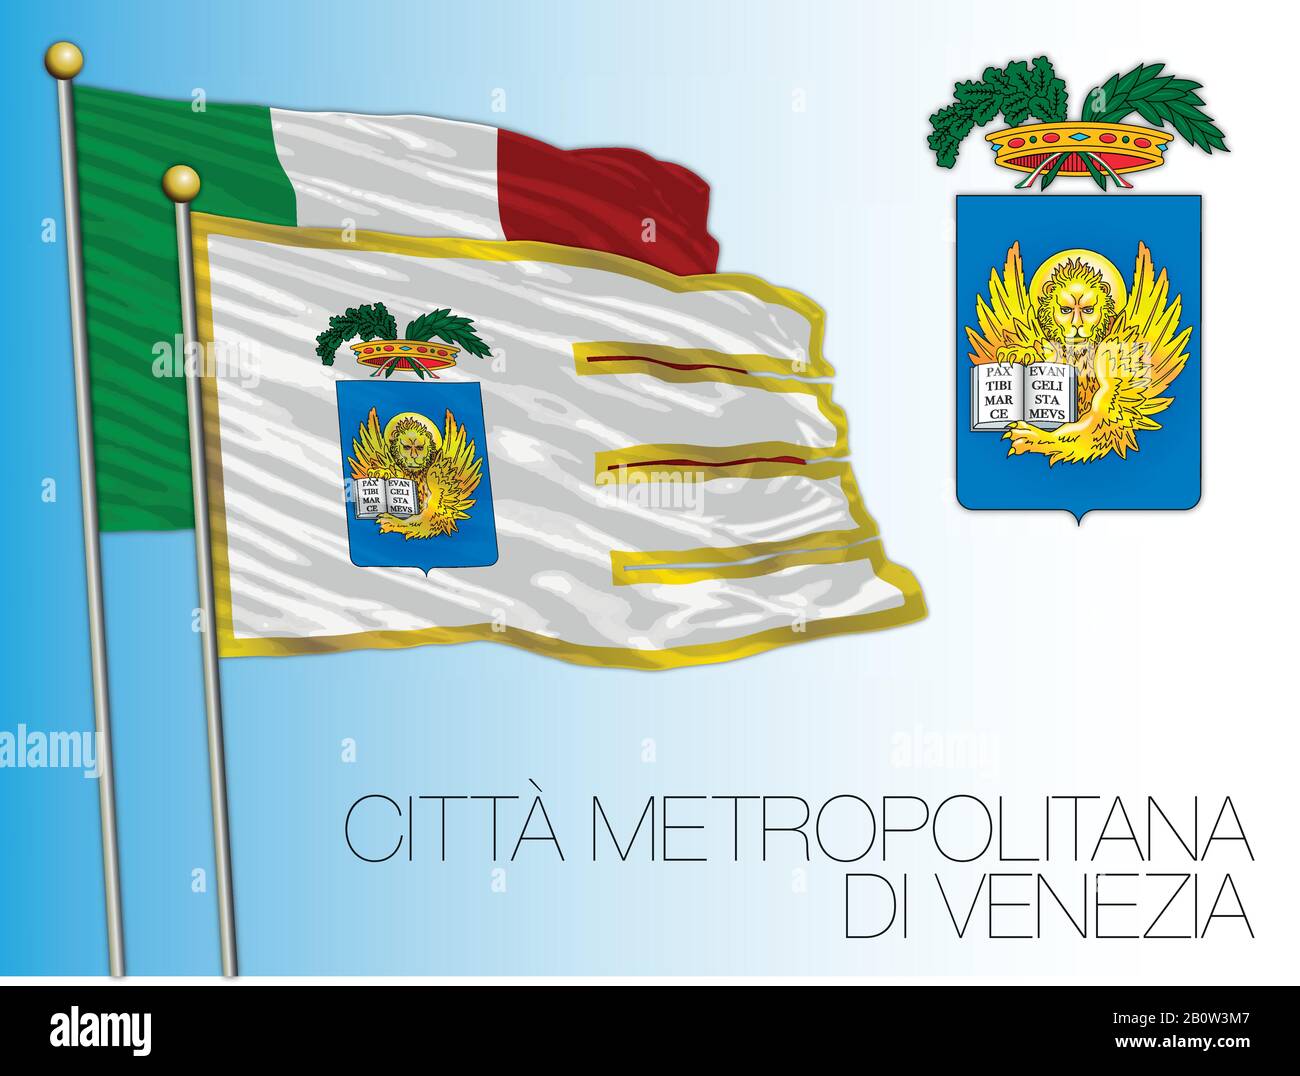 Citta Metropolitana di Venezia, ville métropolitaine de Venise, drapeau et armoiries, région de Vénétie, Italie, illustration vectorielle Illustration de Vecteur